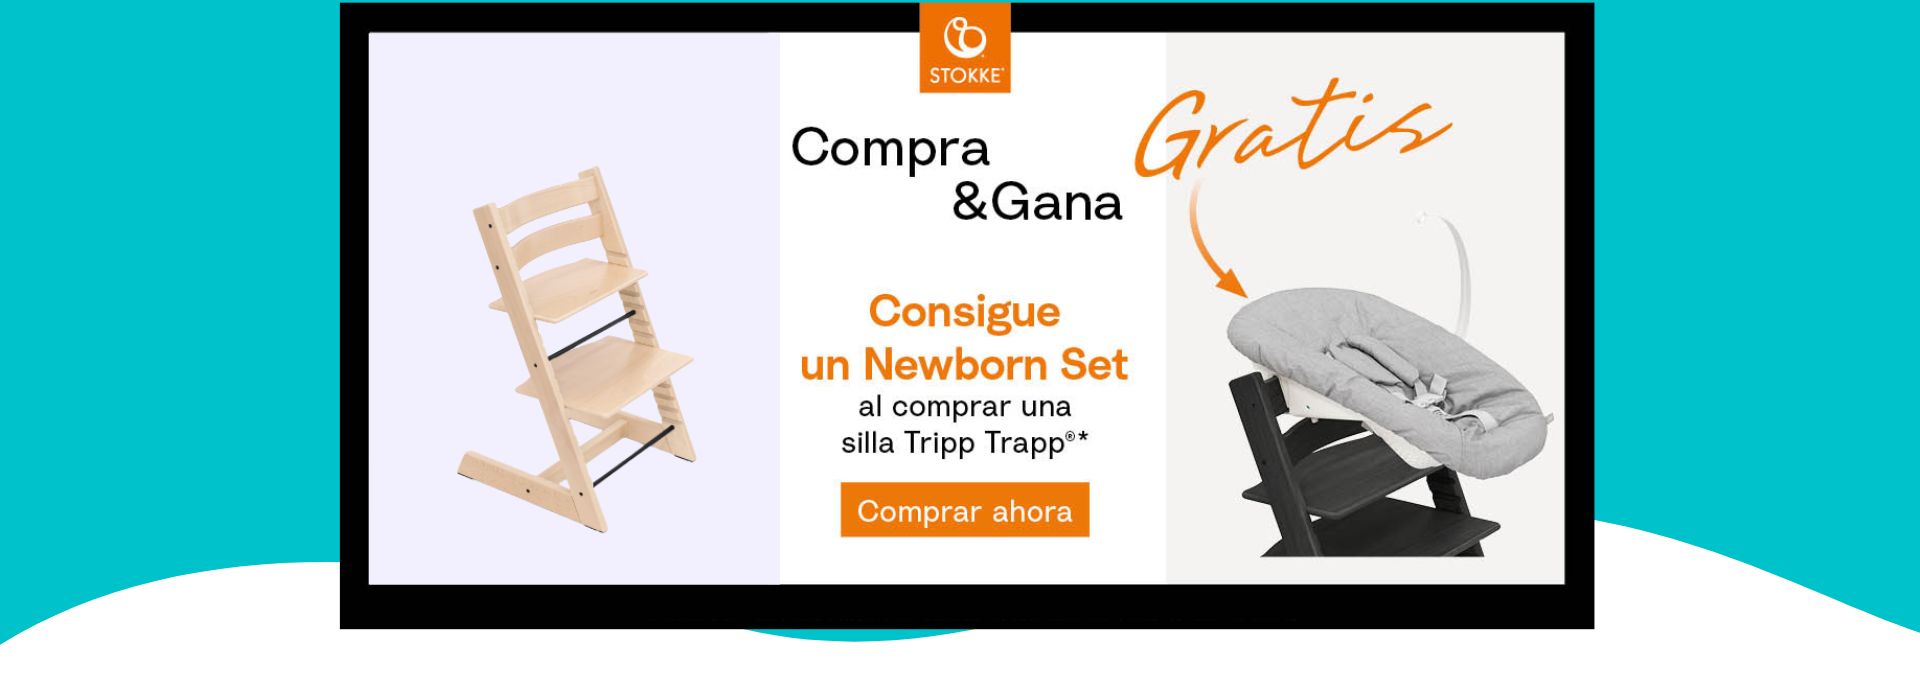 /Bebemálaga | La Boutique del Bebé - Tripp trapp + Newborn set Stokke Promo